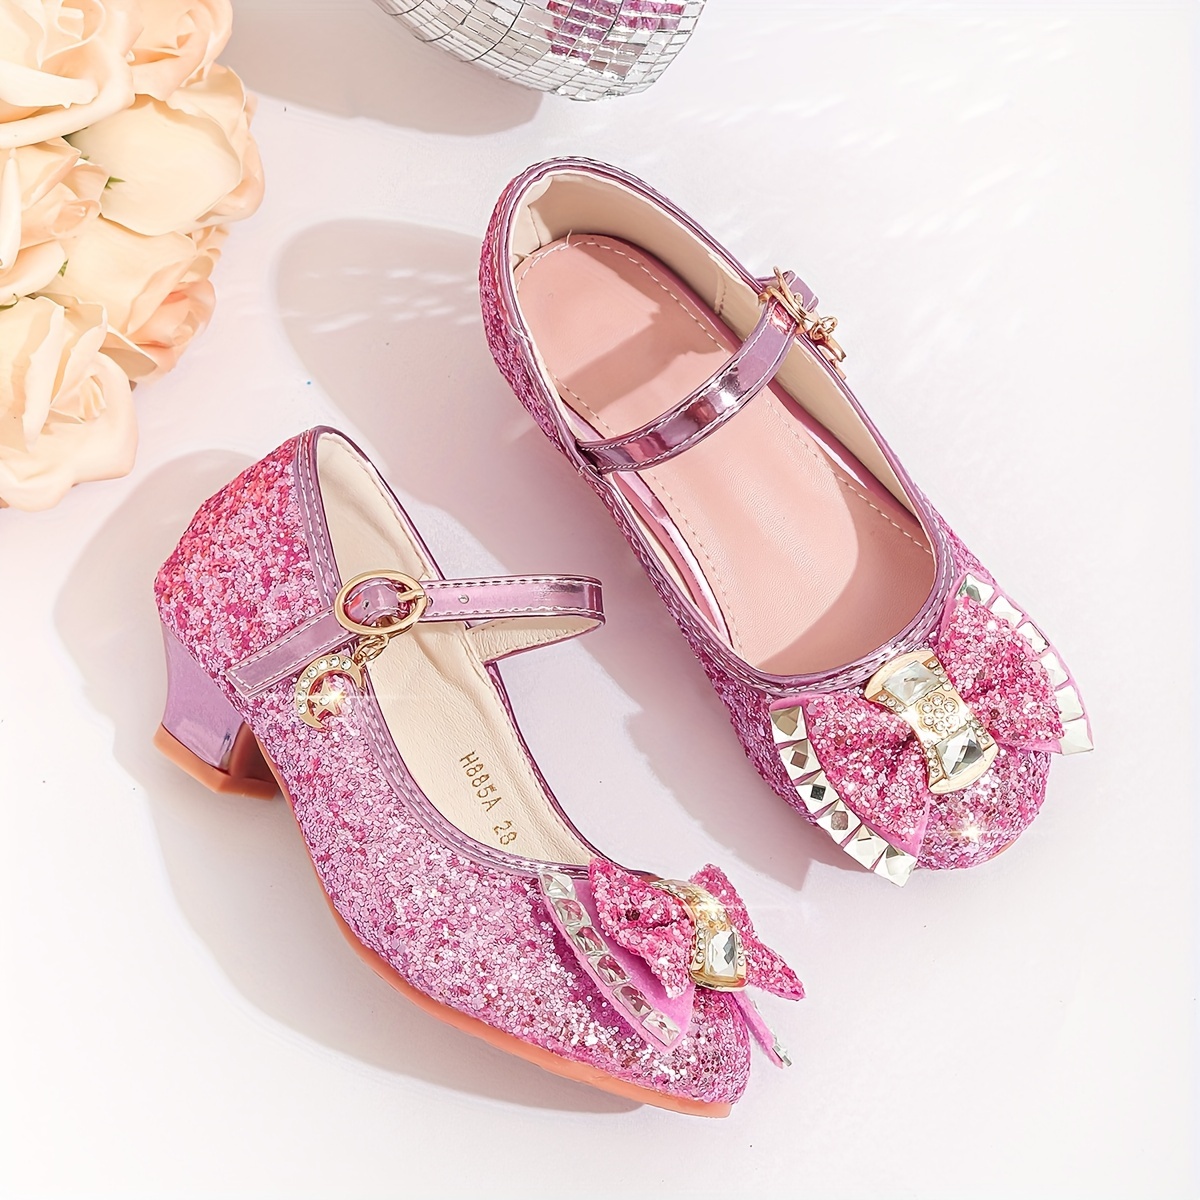 Zapatos Princess Crystal De Tacón Alto Para Niña